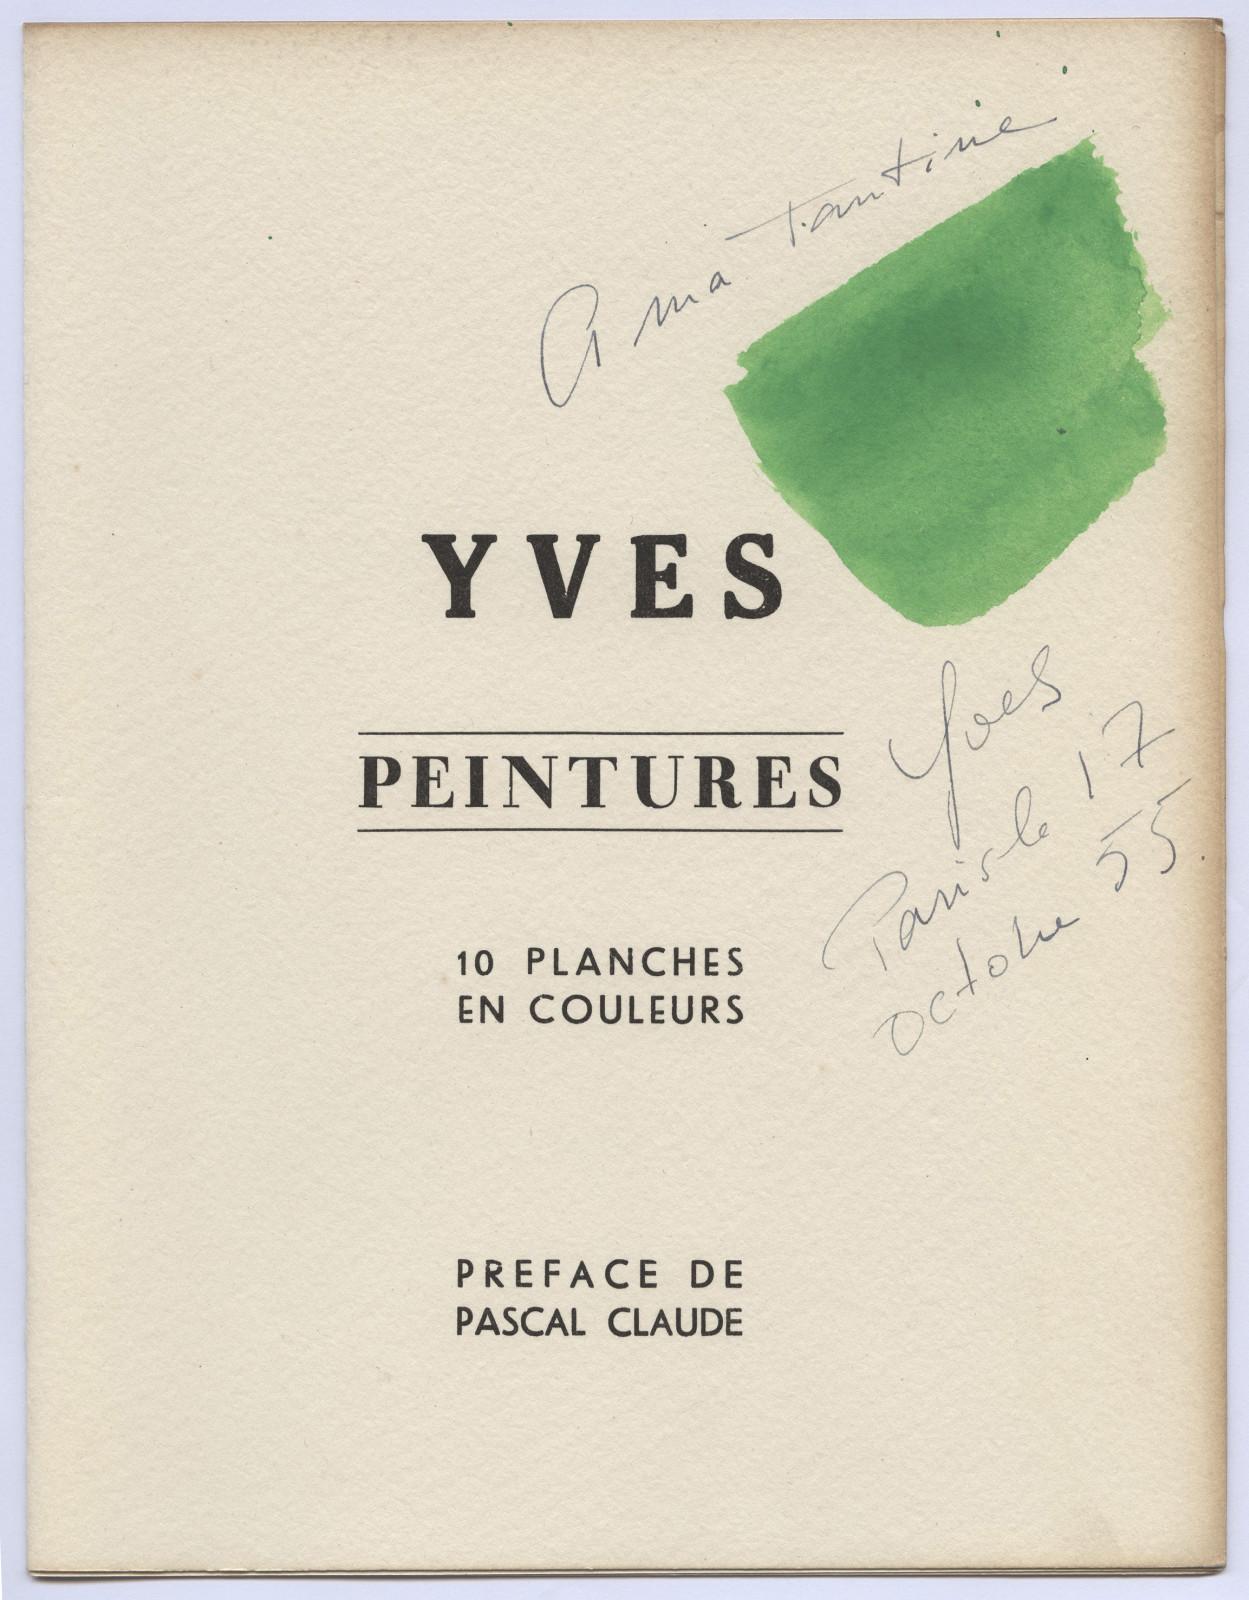 Yves Peintures [Yves Paintings]